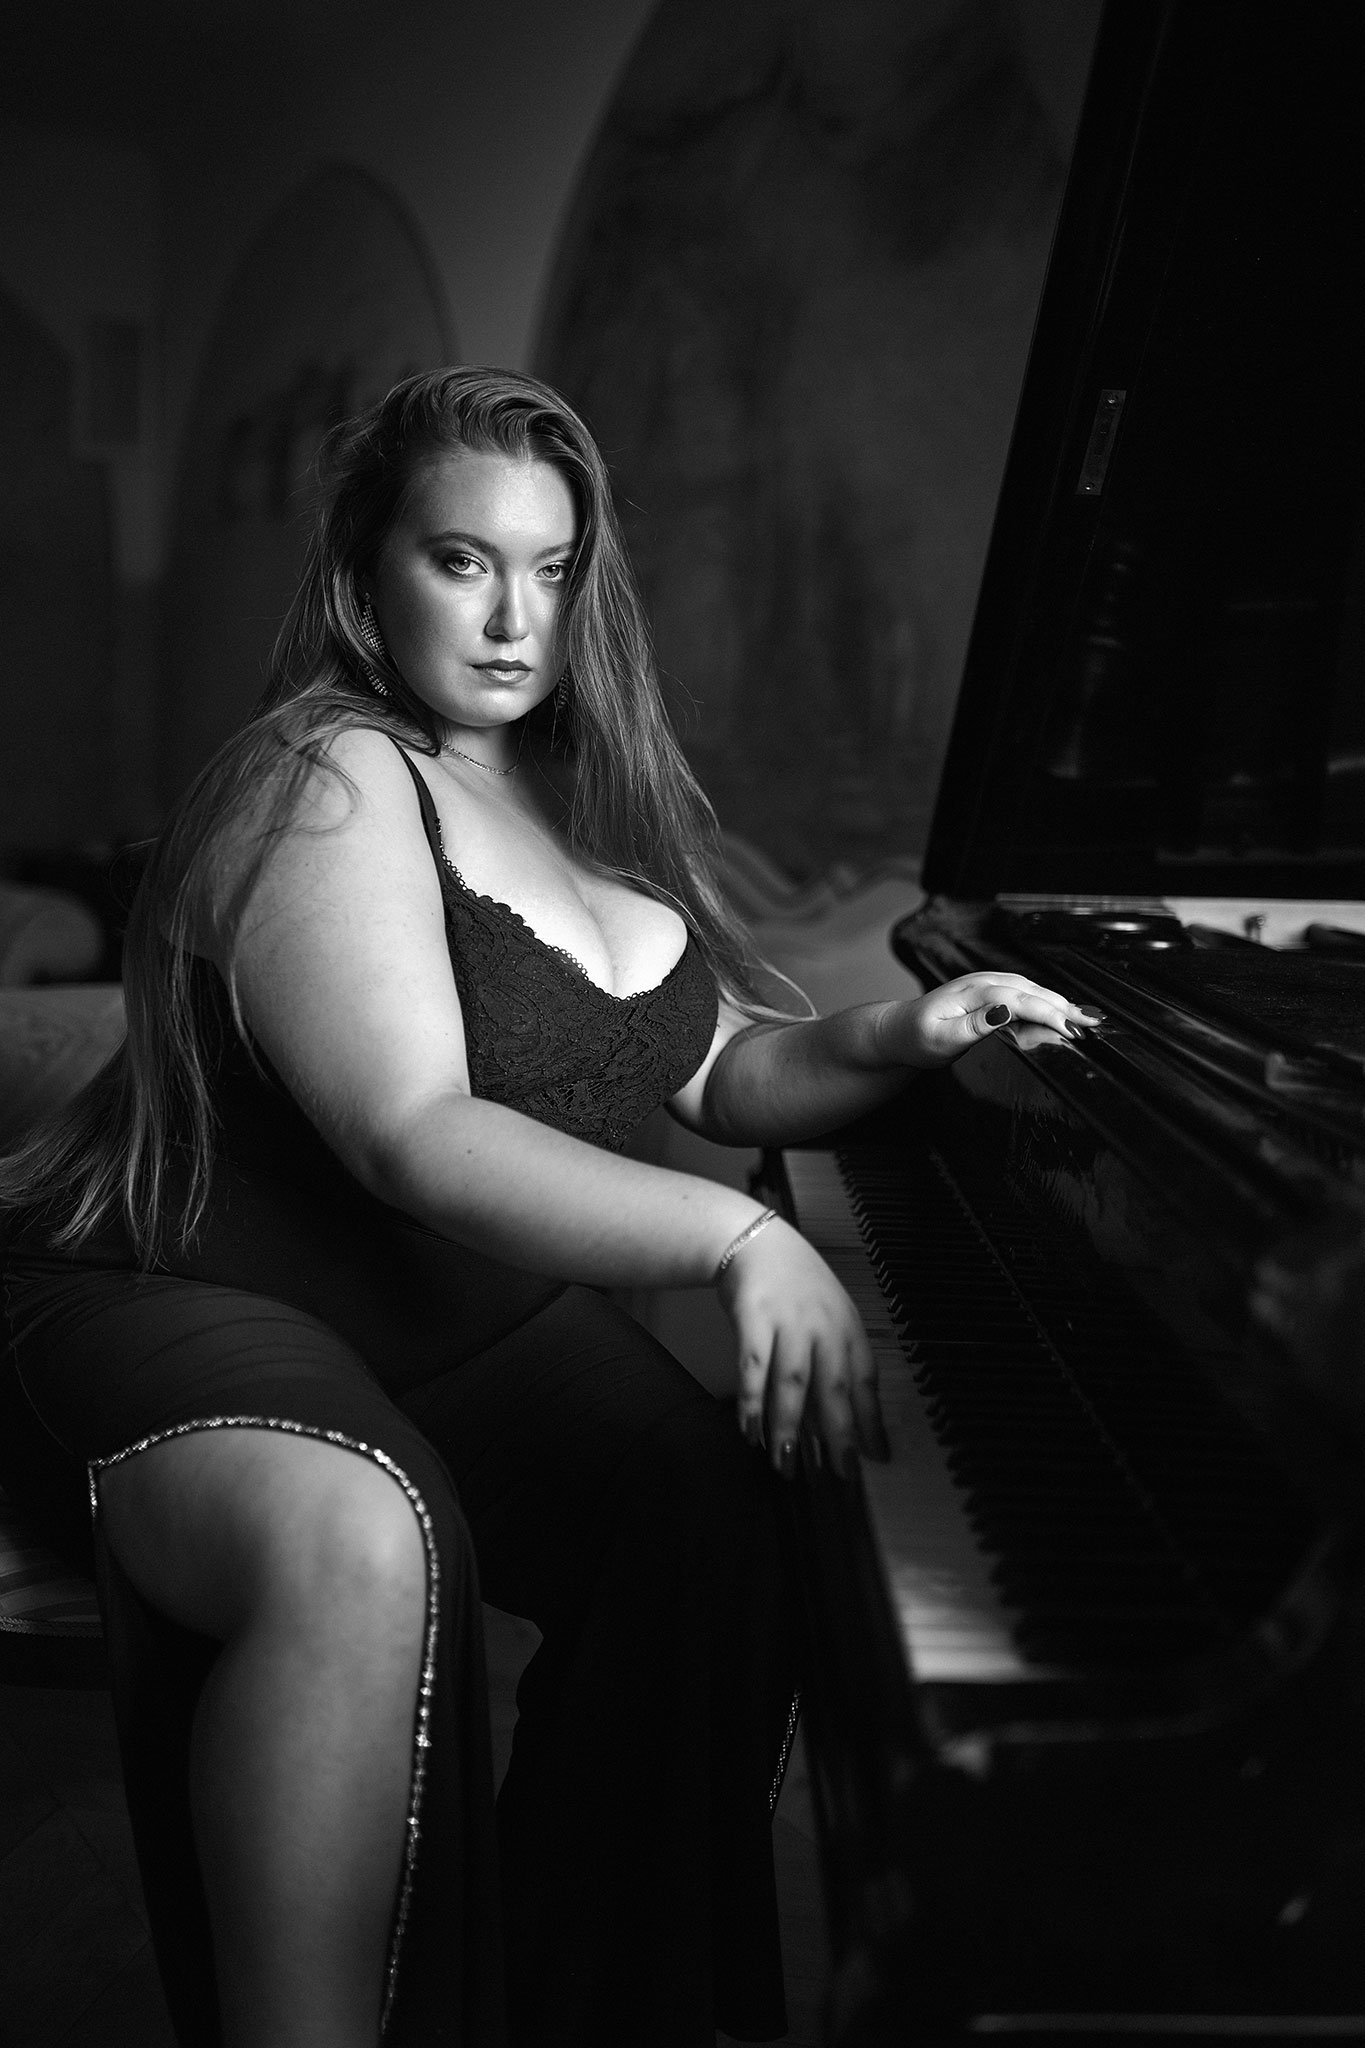 En kvinne med langt blondt hår sitter i en vakker svart kjole ved pianoet